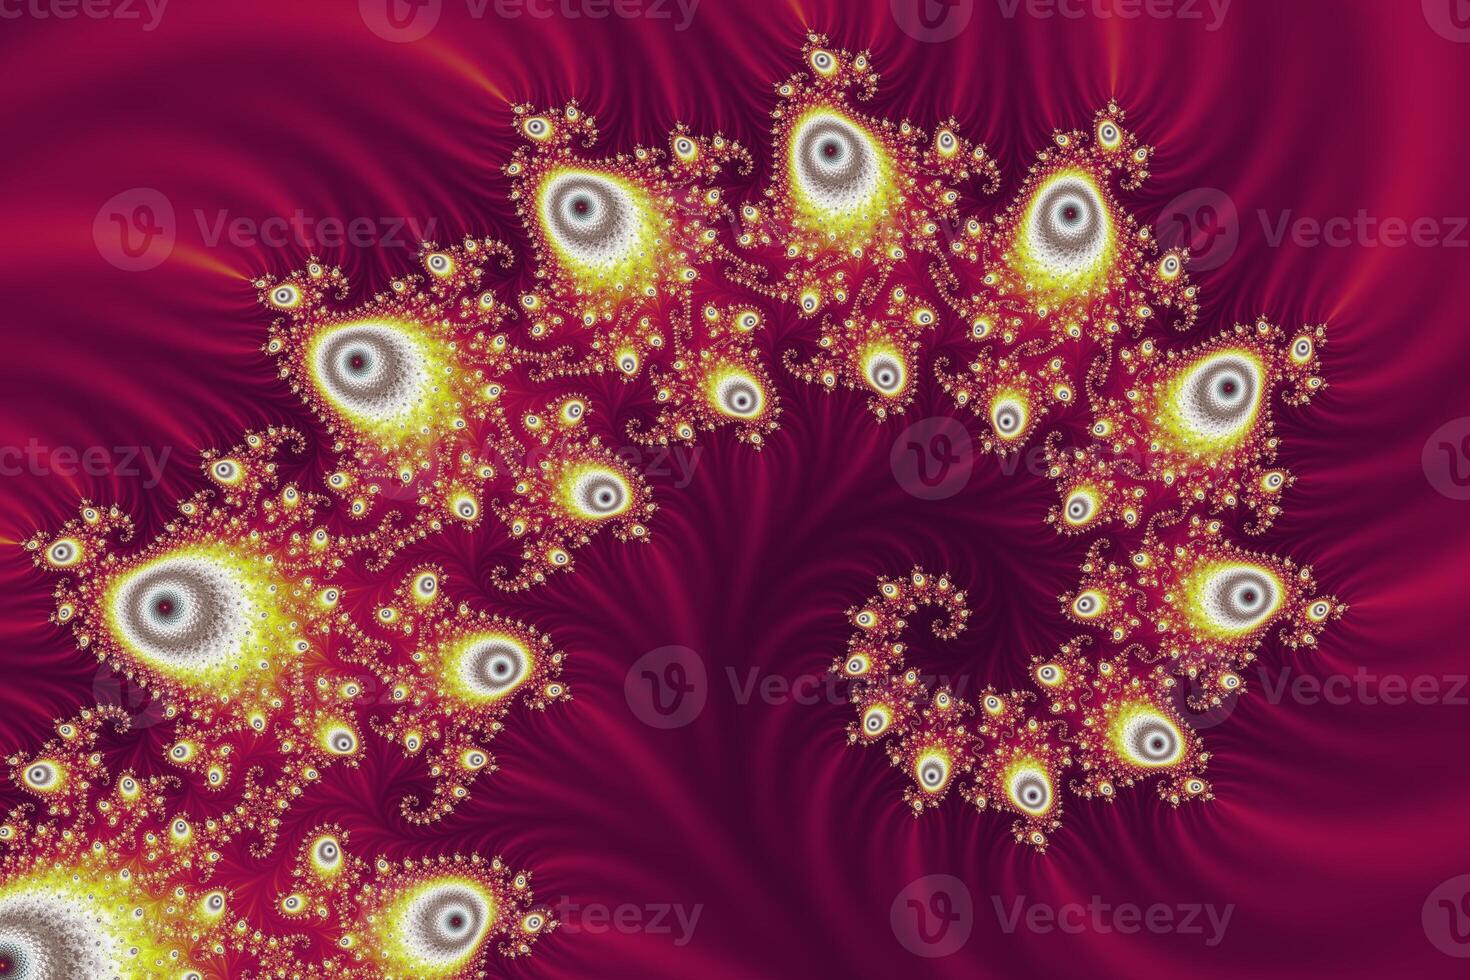 belo zoom no infinito matemático mandelbrot conjunto fractal. foto